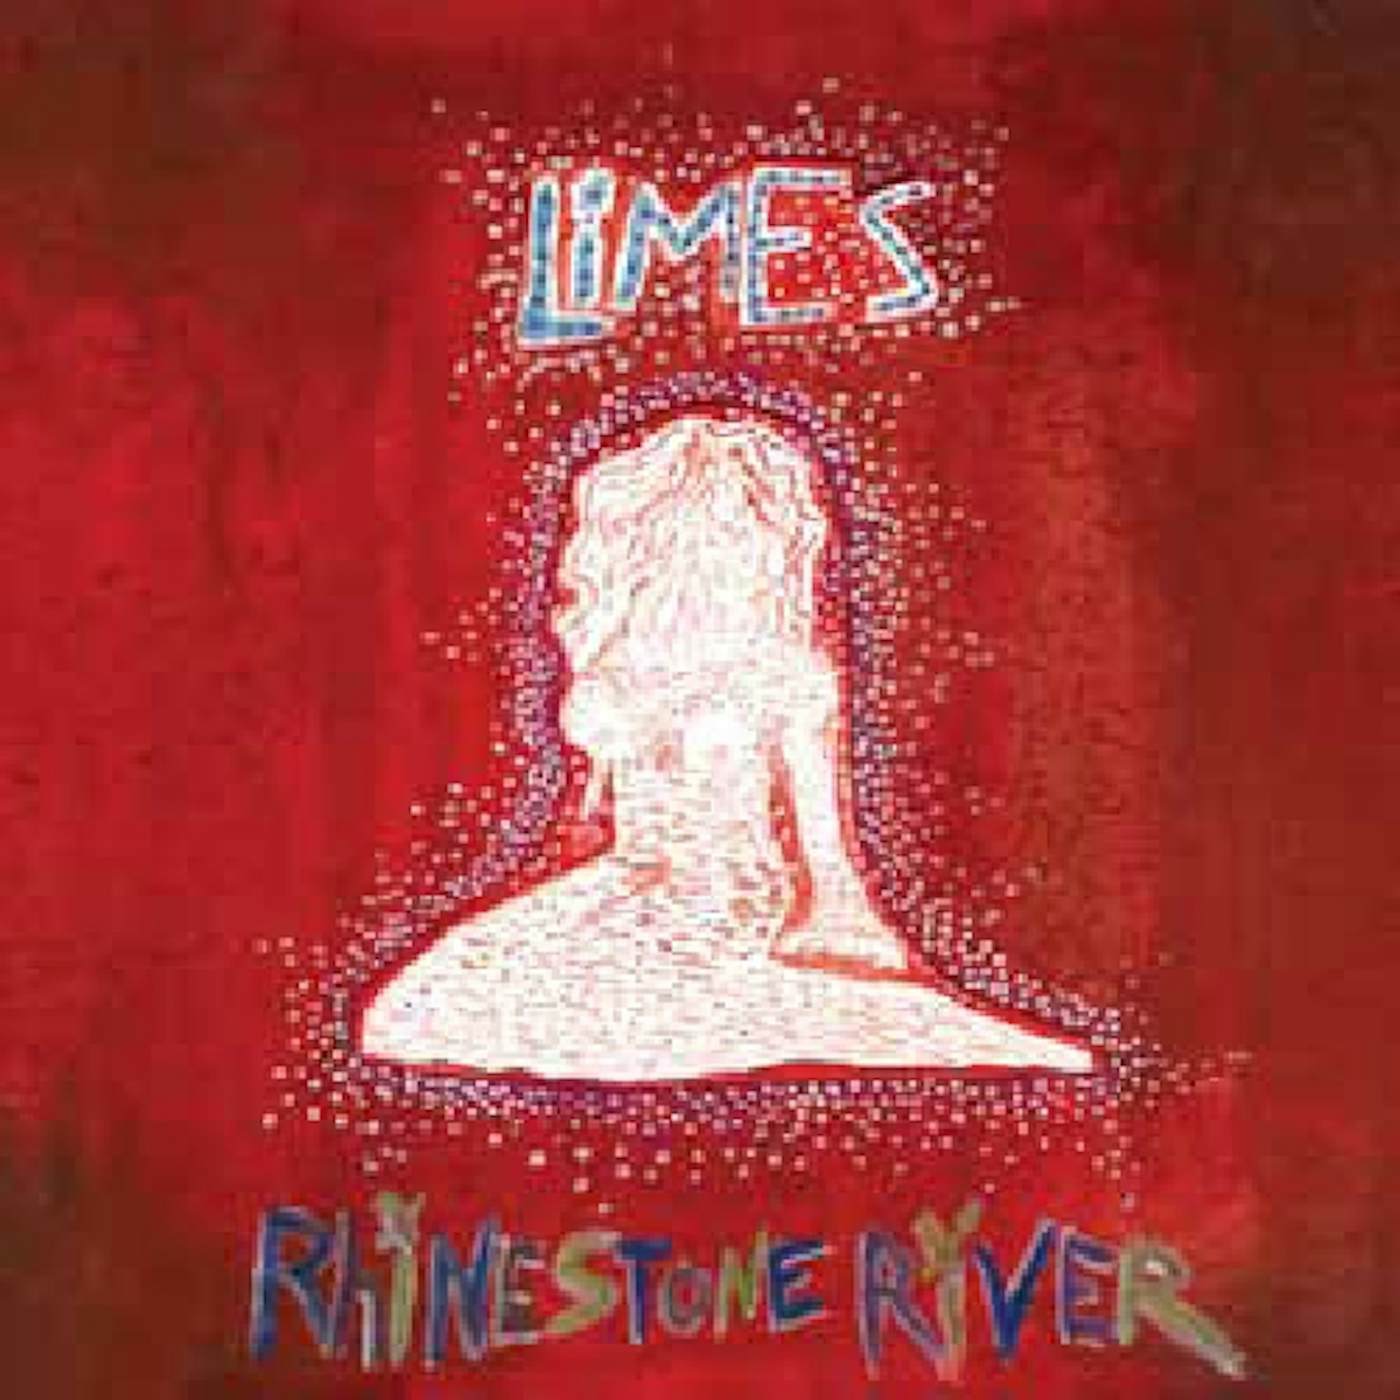 Limes Rhinestone River Vinyl Record